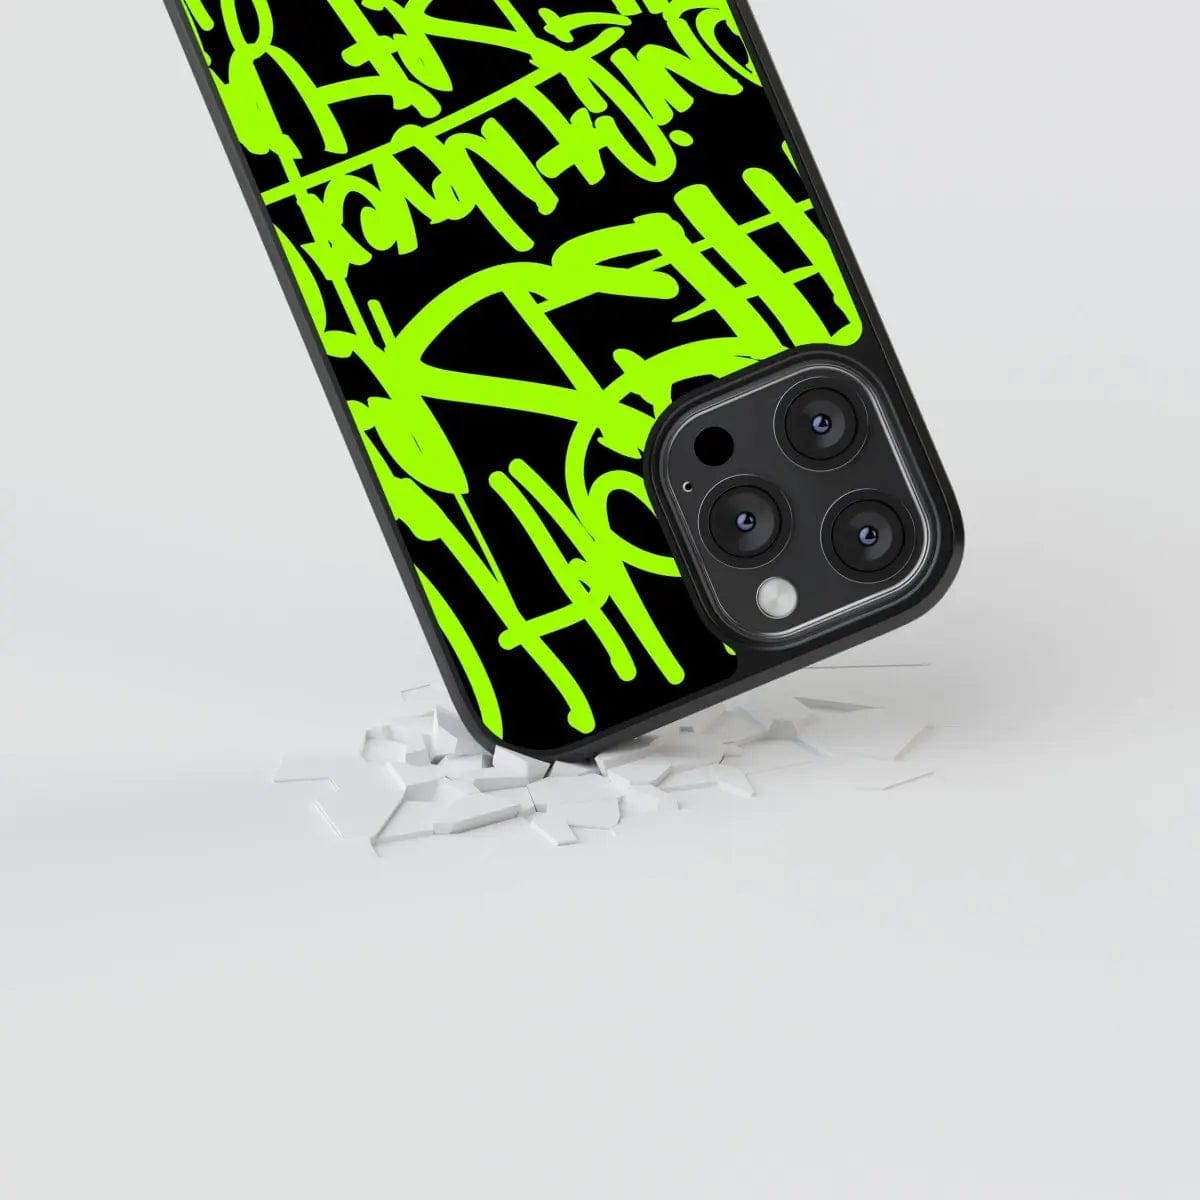 Phone case "Green graffiti 2" - Artcase